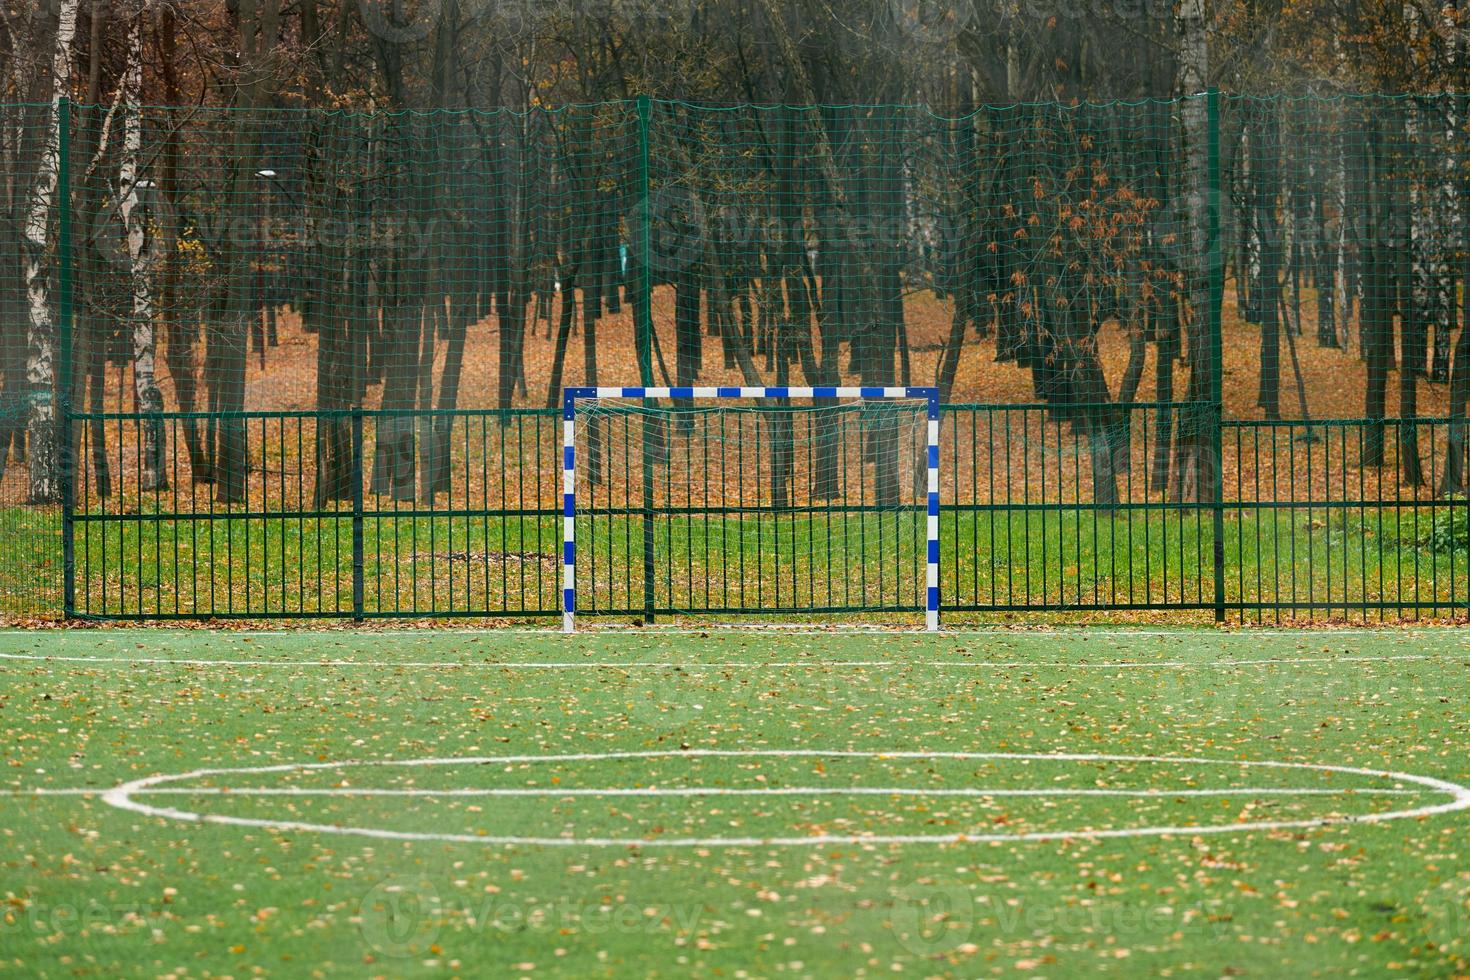 césped artificial, cubierta de campo deportivo con portería de fútbol foto